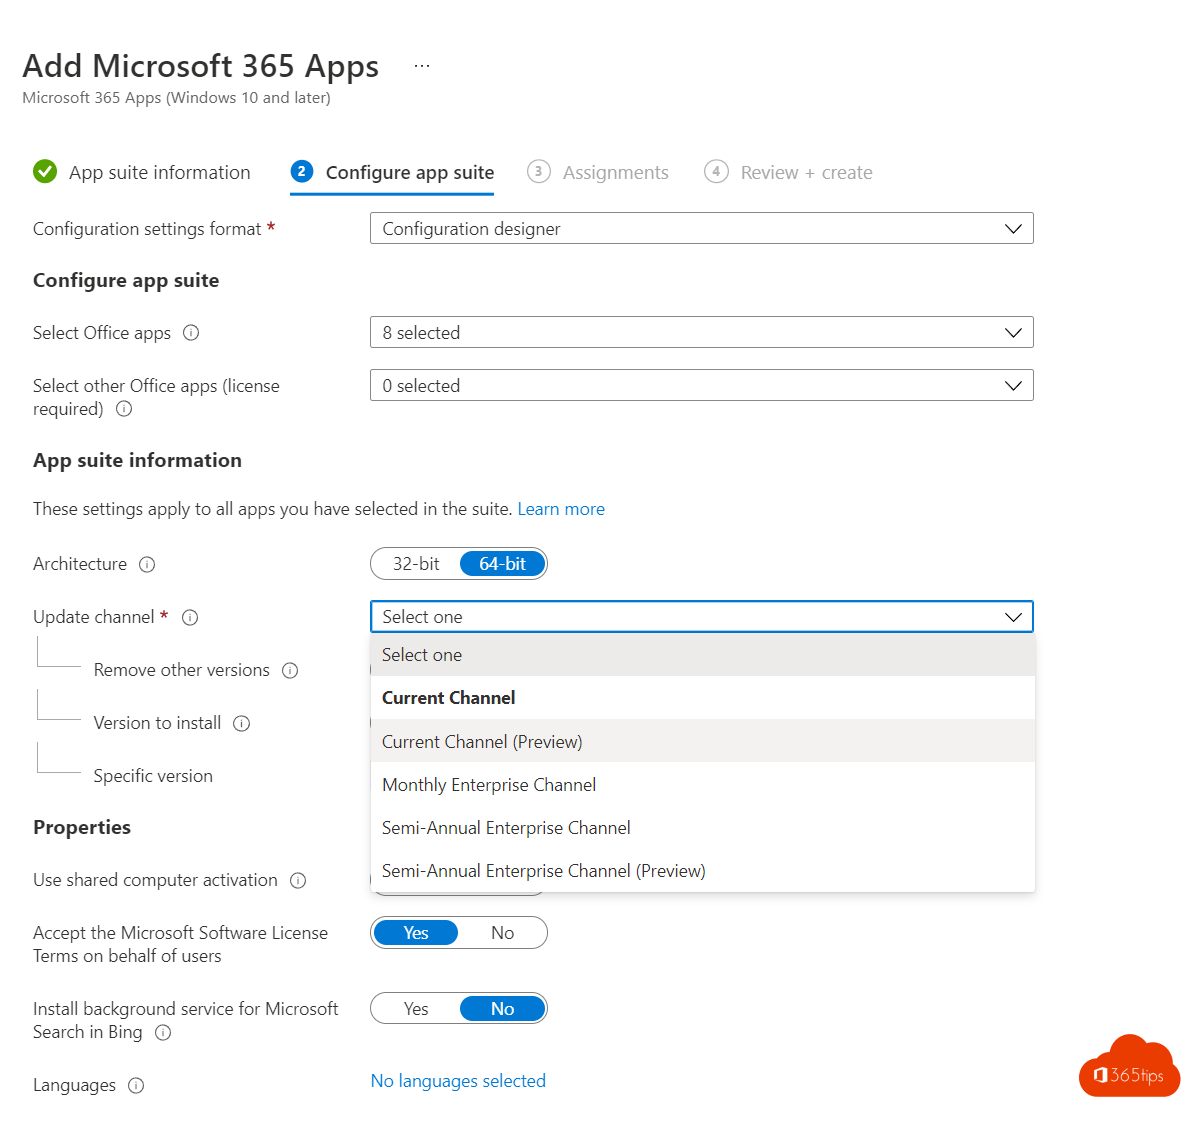 Bereitstellung von Microsoft 365 Apps mit Endpoint Manager in 8 Schritten